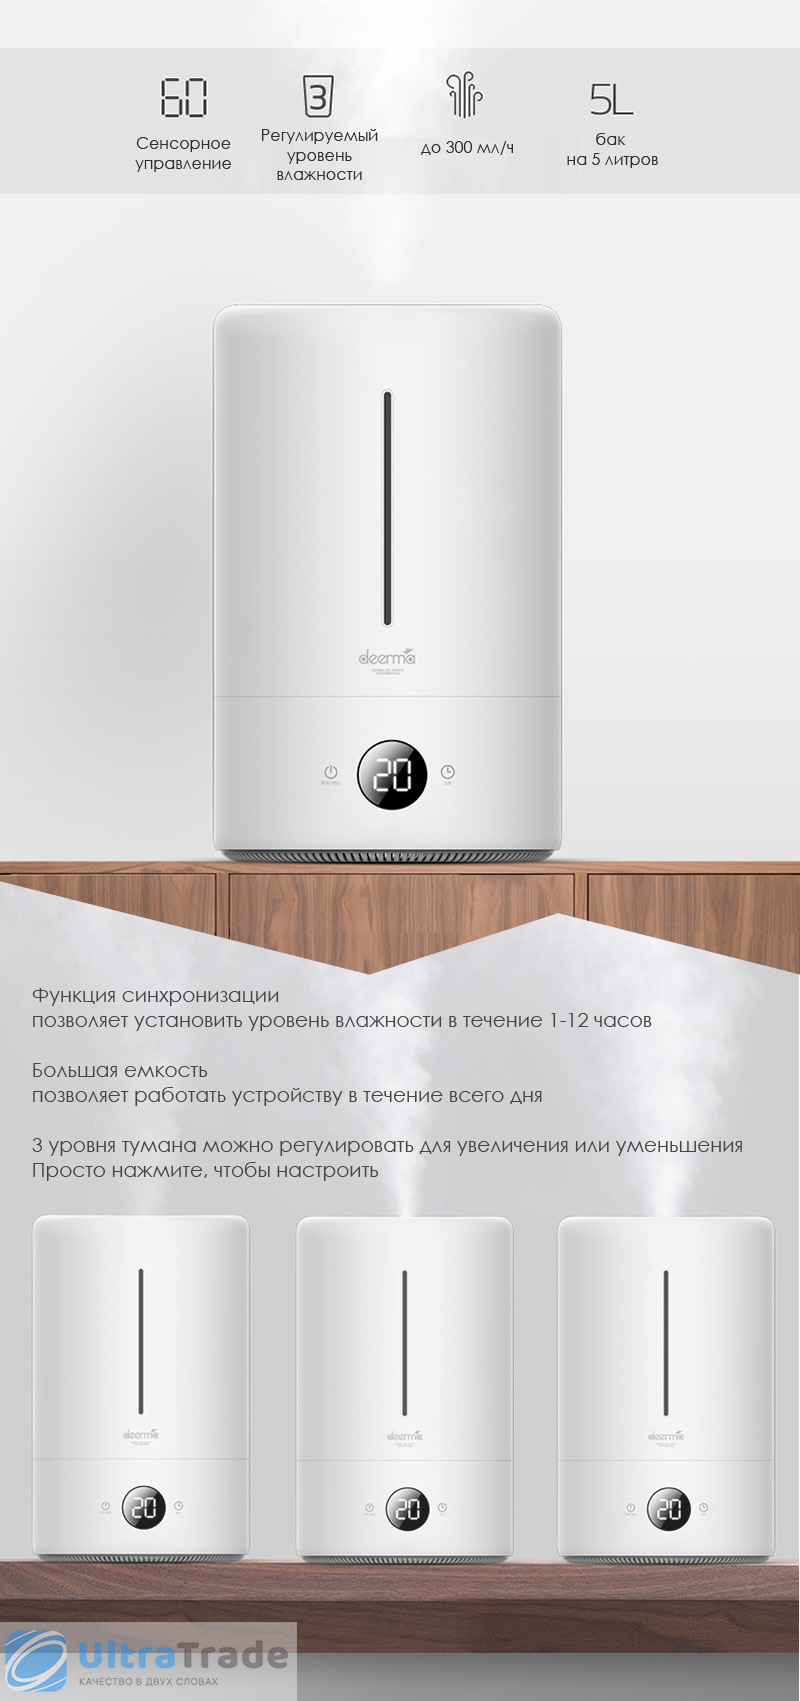 Увлажнитель воздуха Xiaomi Deerma Air Humidifier 5L (DEM-F628A)